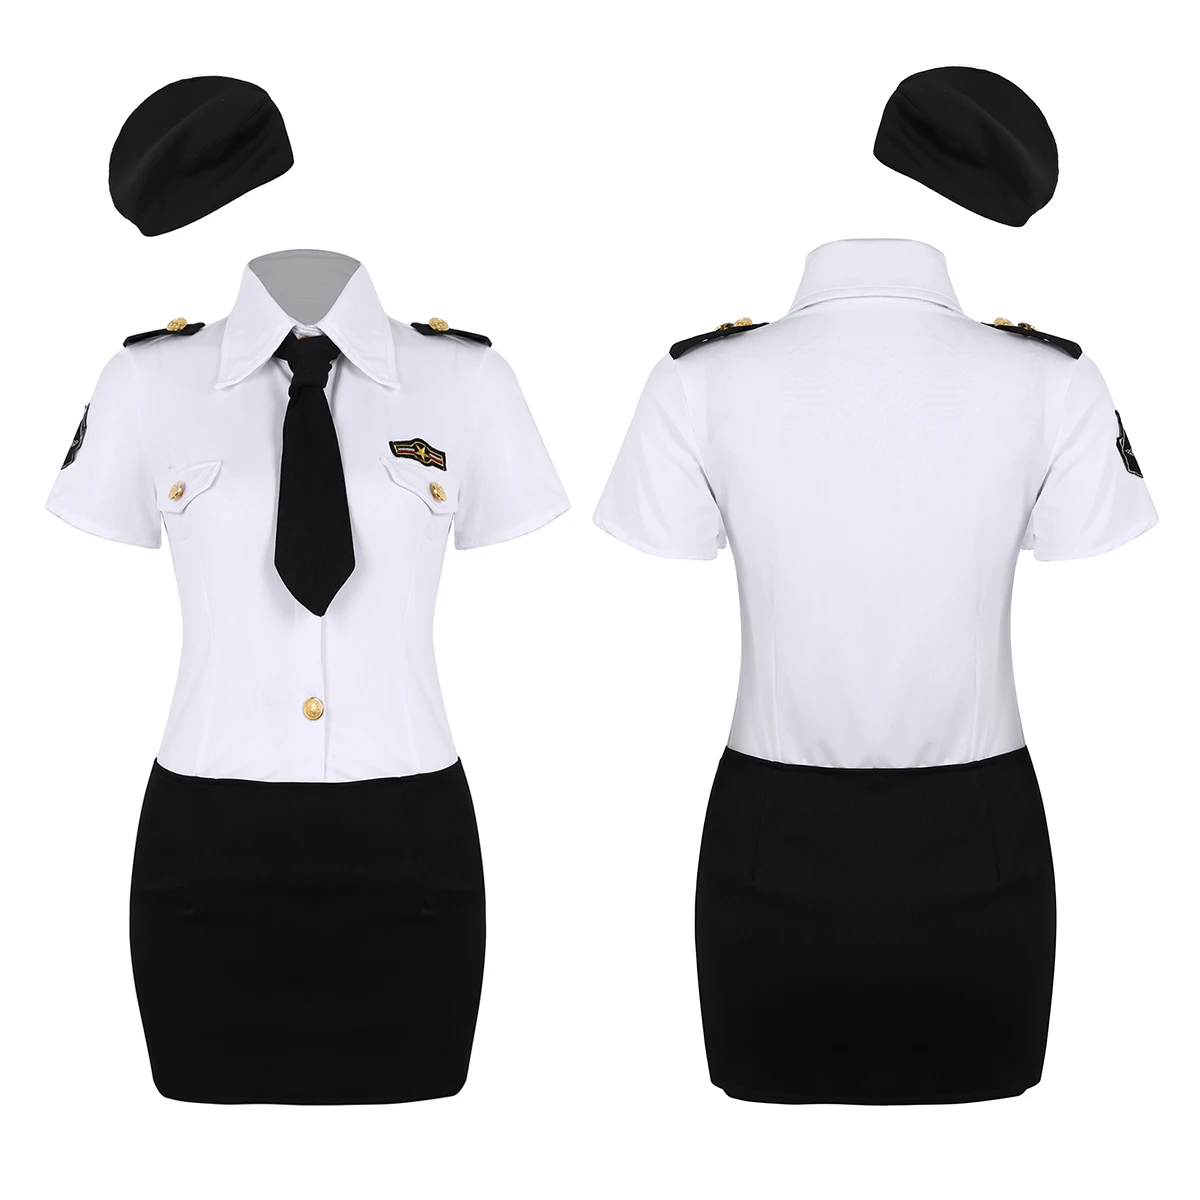 Для женщин и взрослых, полицейский, женская униформа, сексуальный полицейский, косплей костюм, белая рубашка, юбка, шляпа, галстук, ролевые костюмы - Цвет: White Black